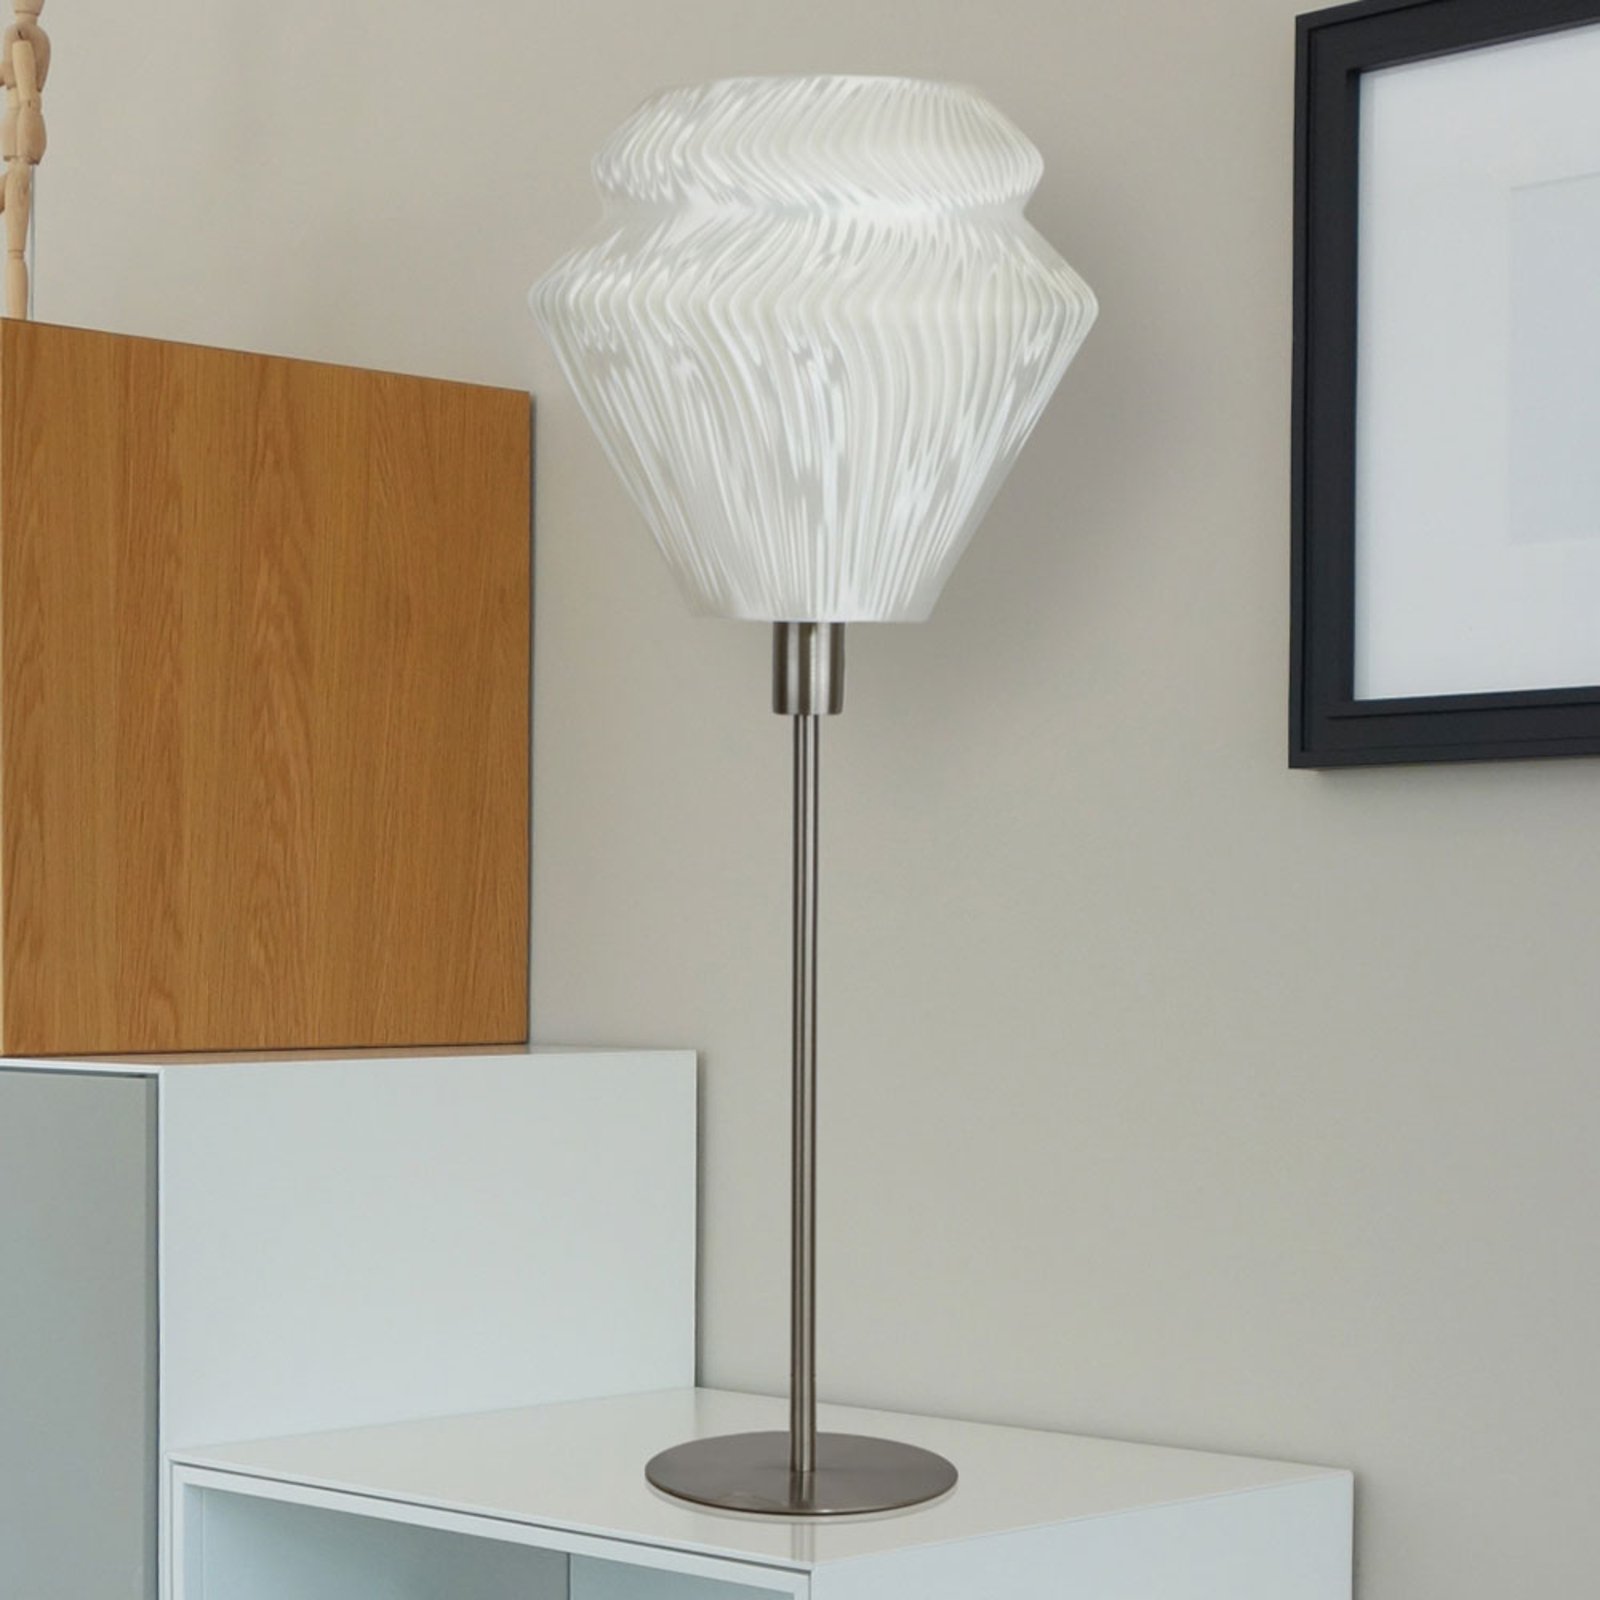 Bordslampa Lamell av biomaterial, Ø 25 cm